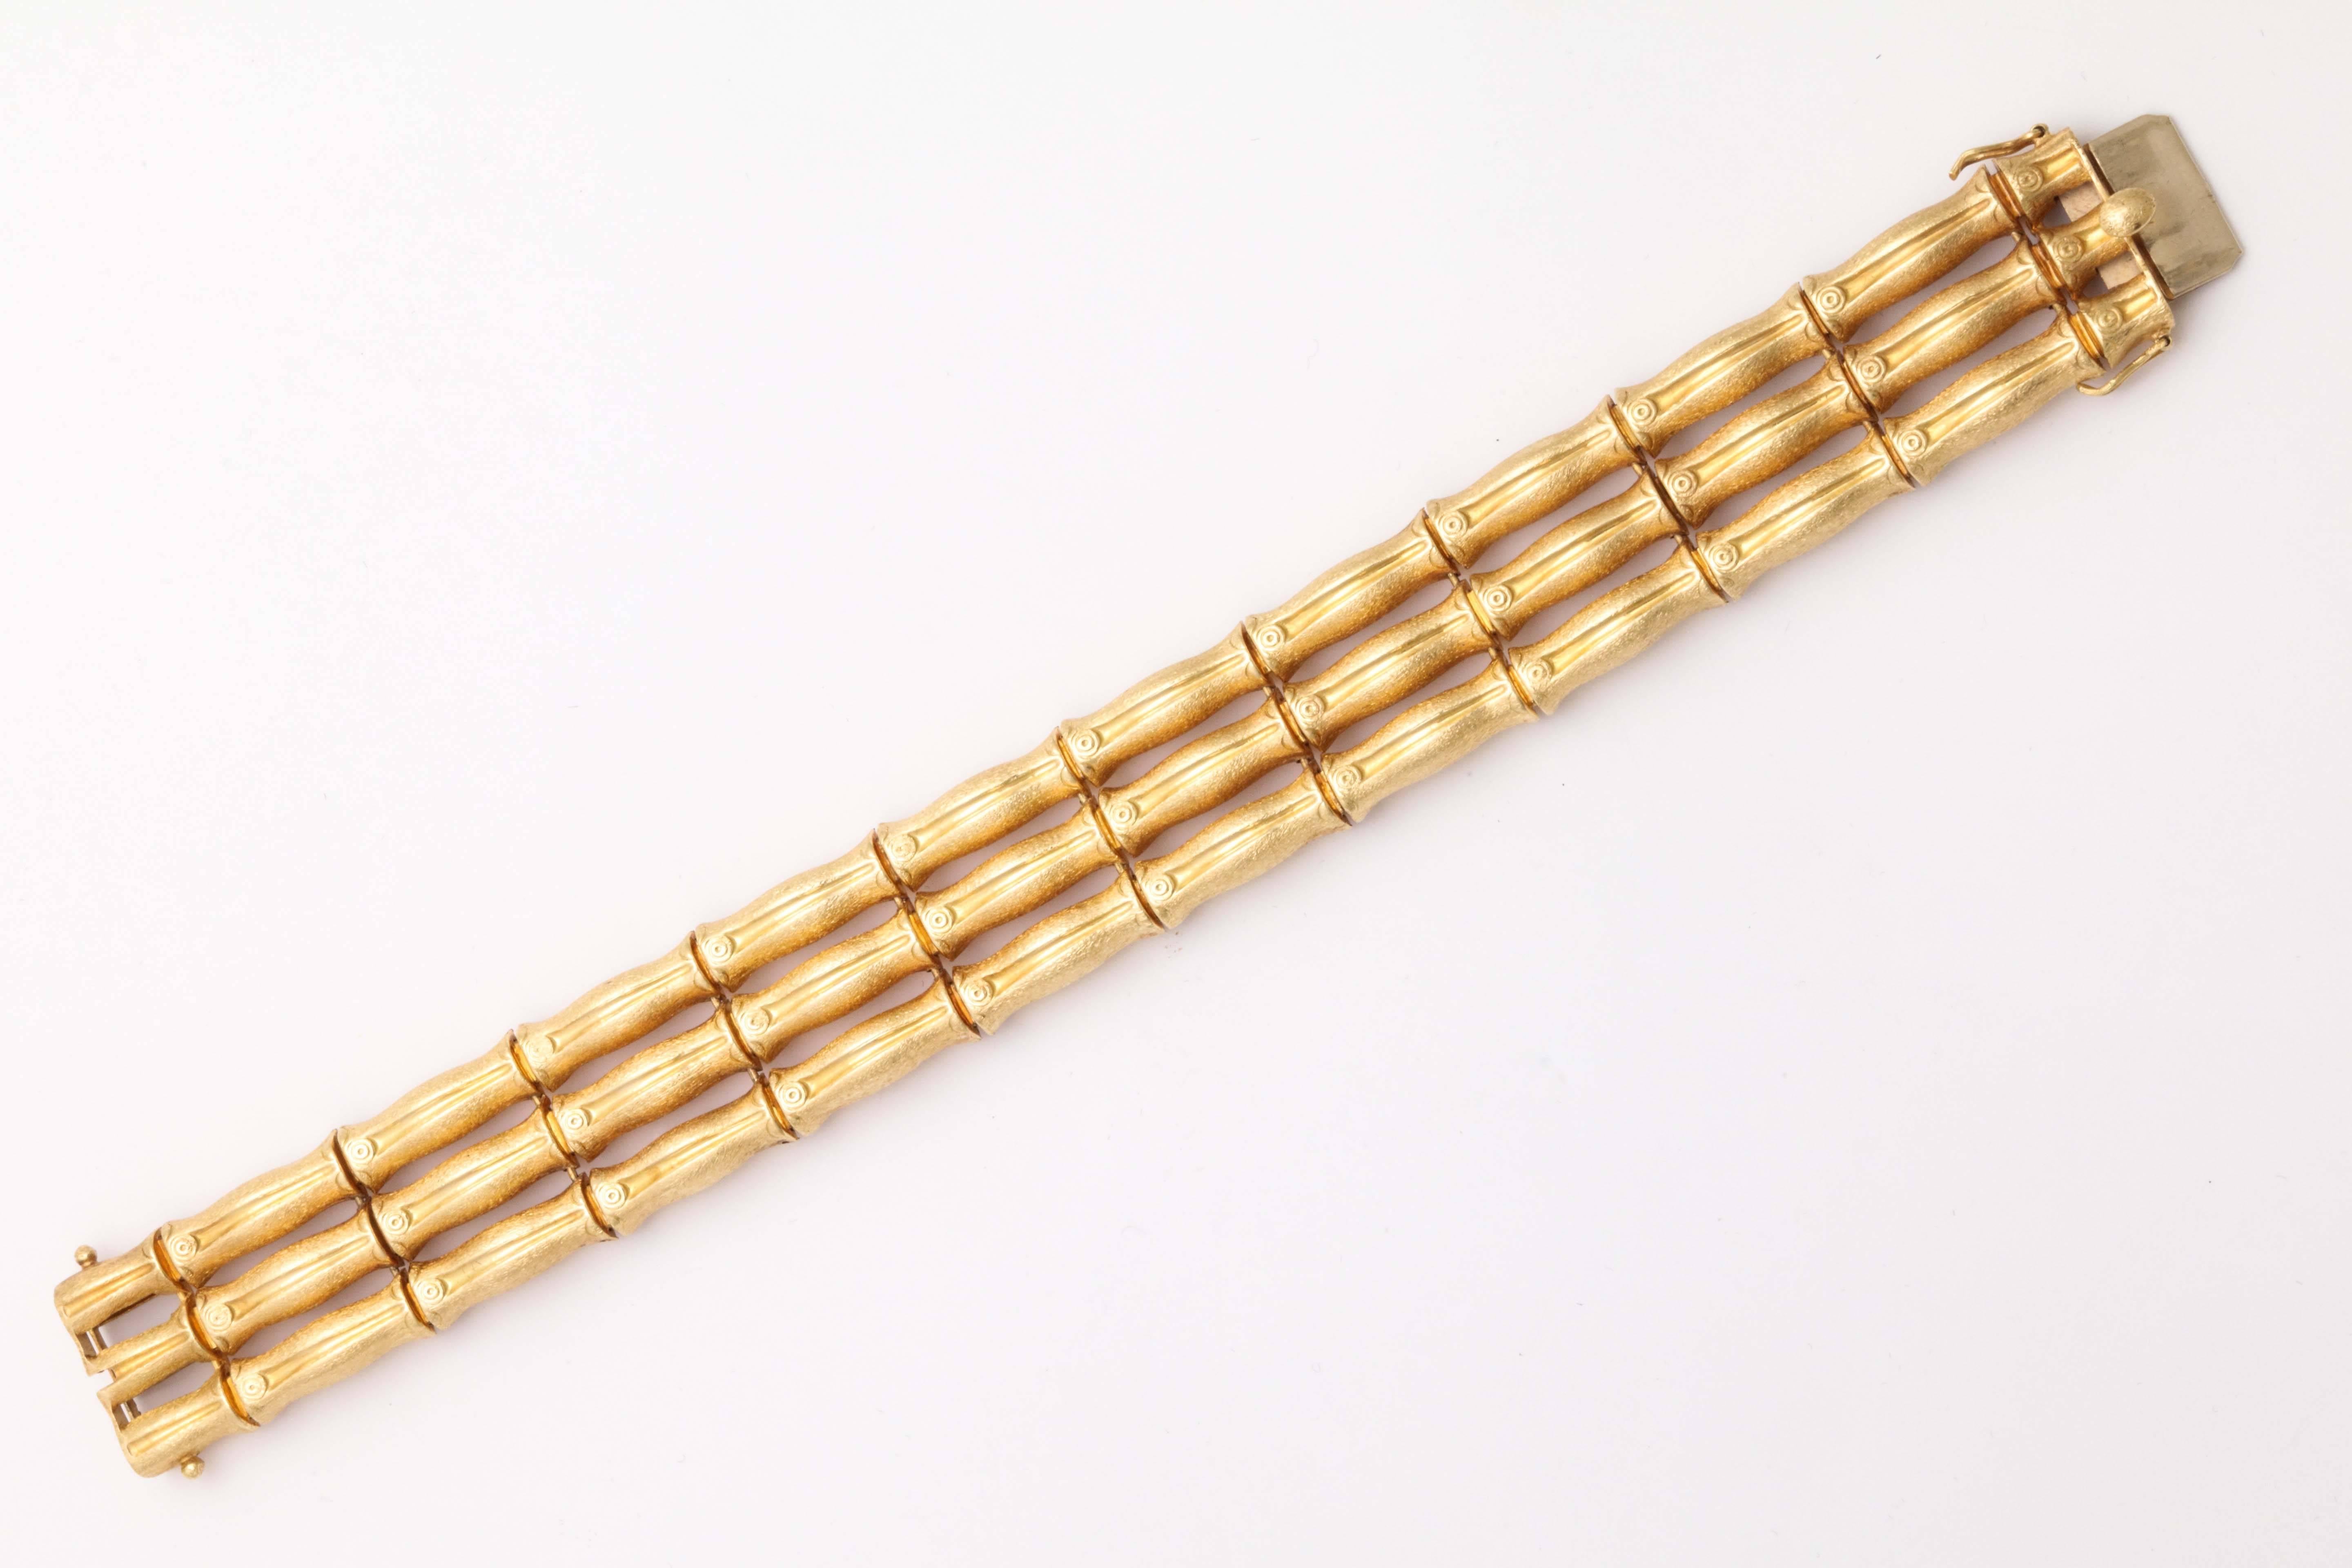 cartier bamboo bracelet